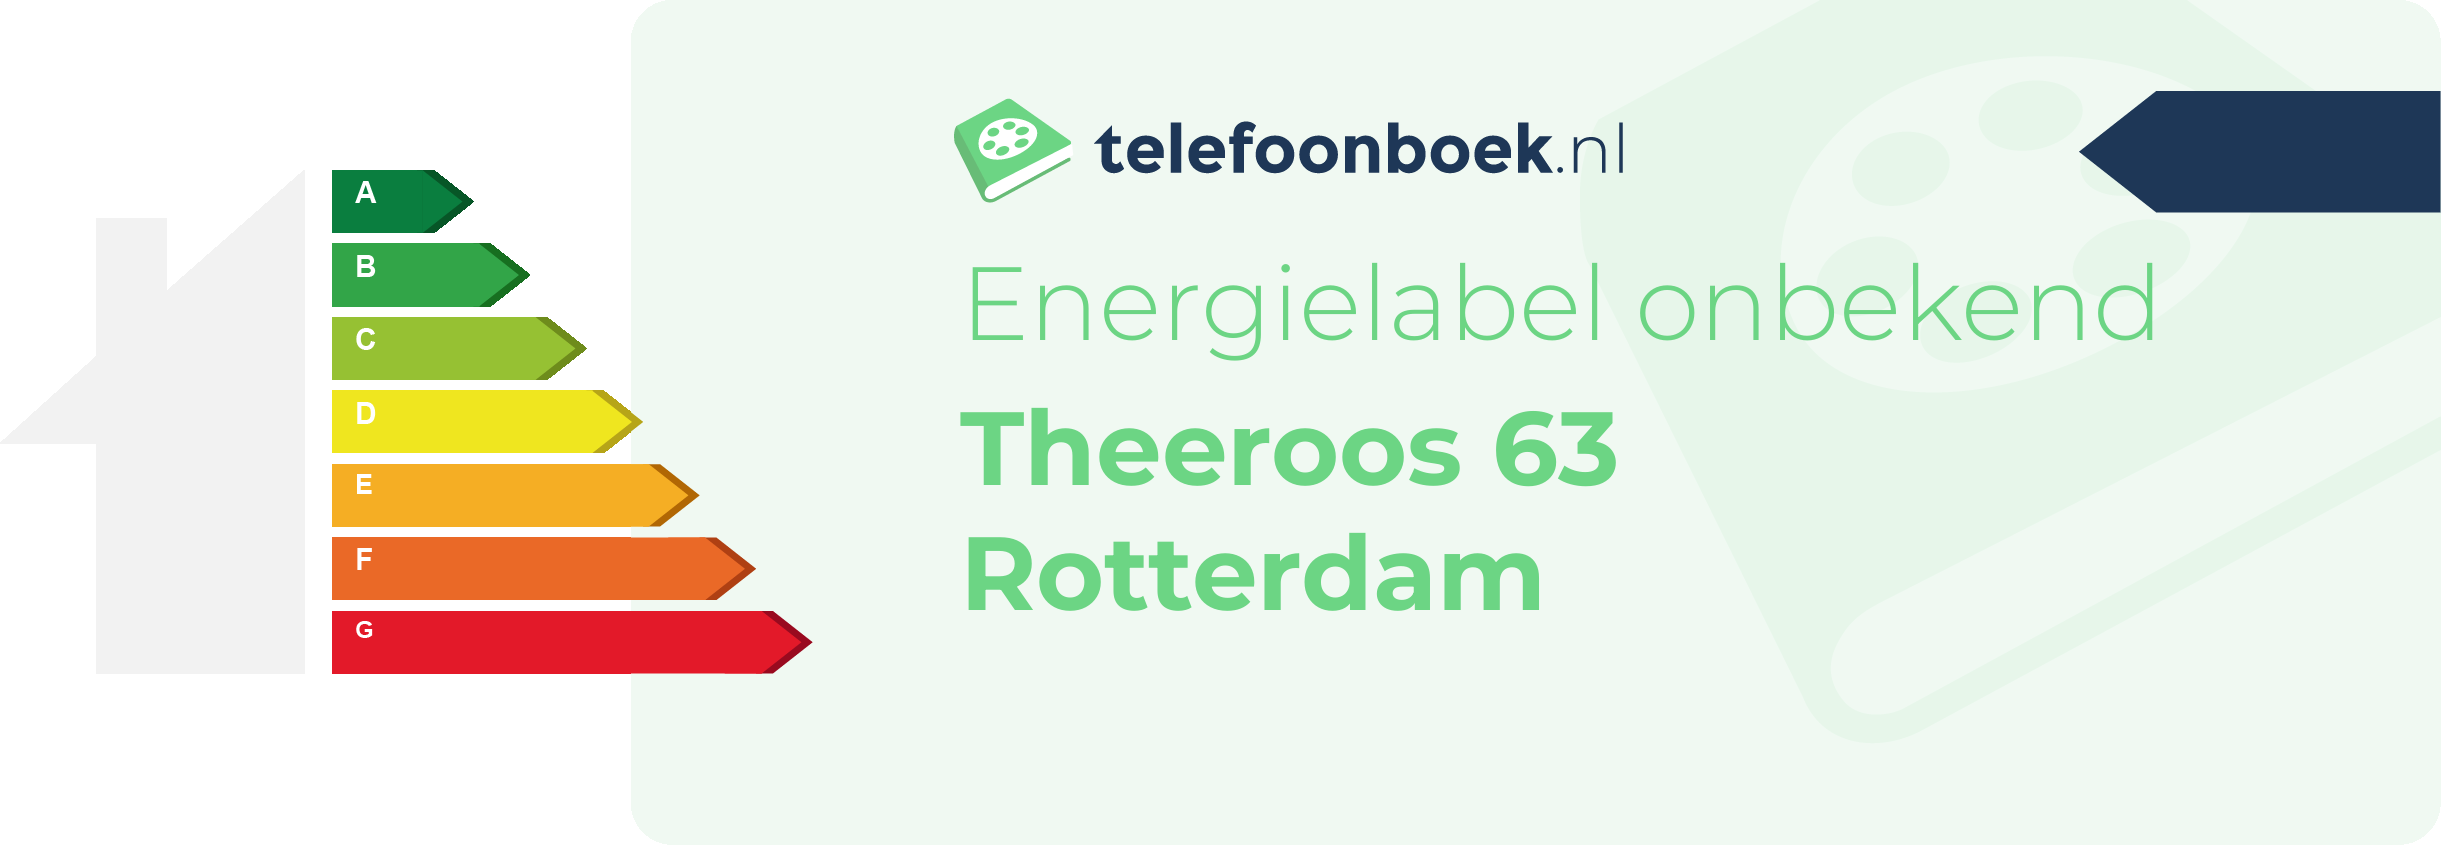 Energielabel Theeroos 63 Rotterdam